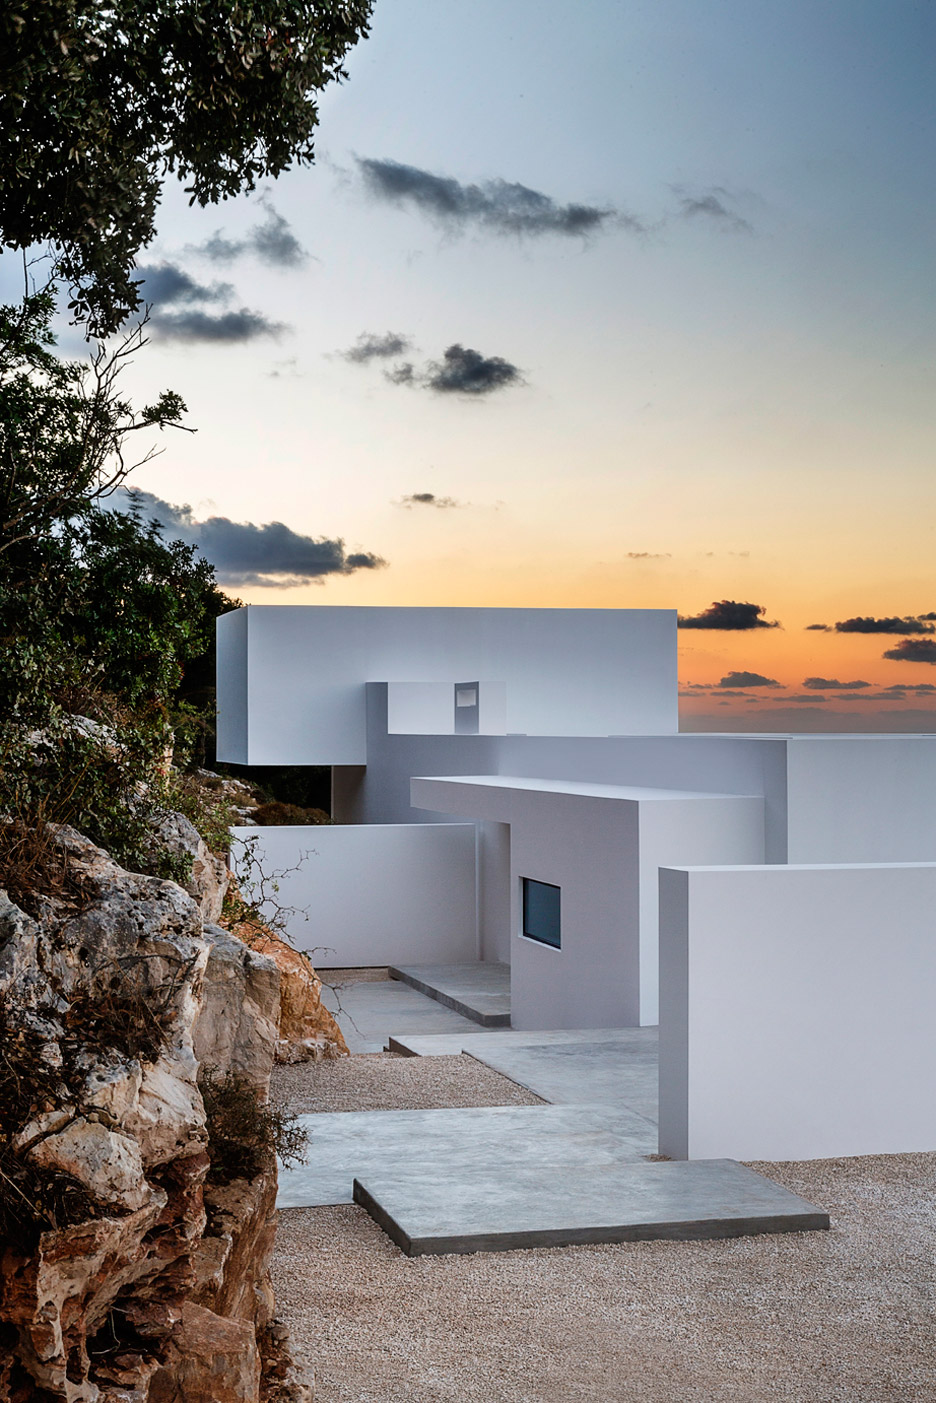 Silver House by Olivier Dwek, Greece